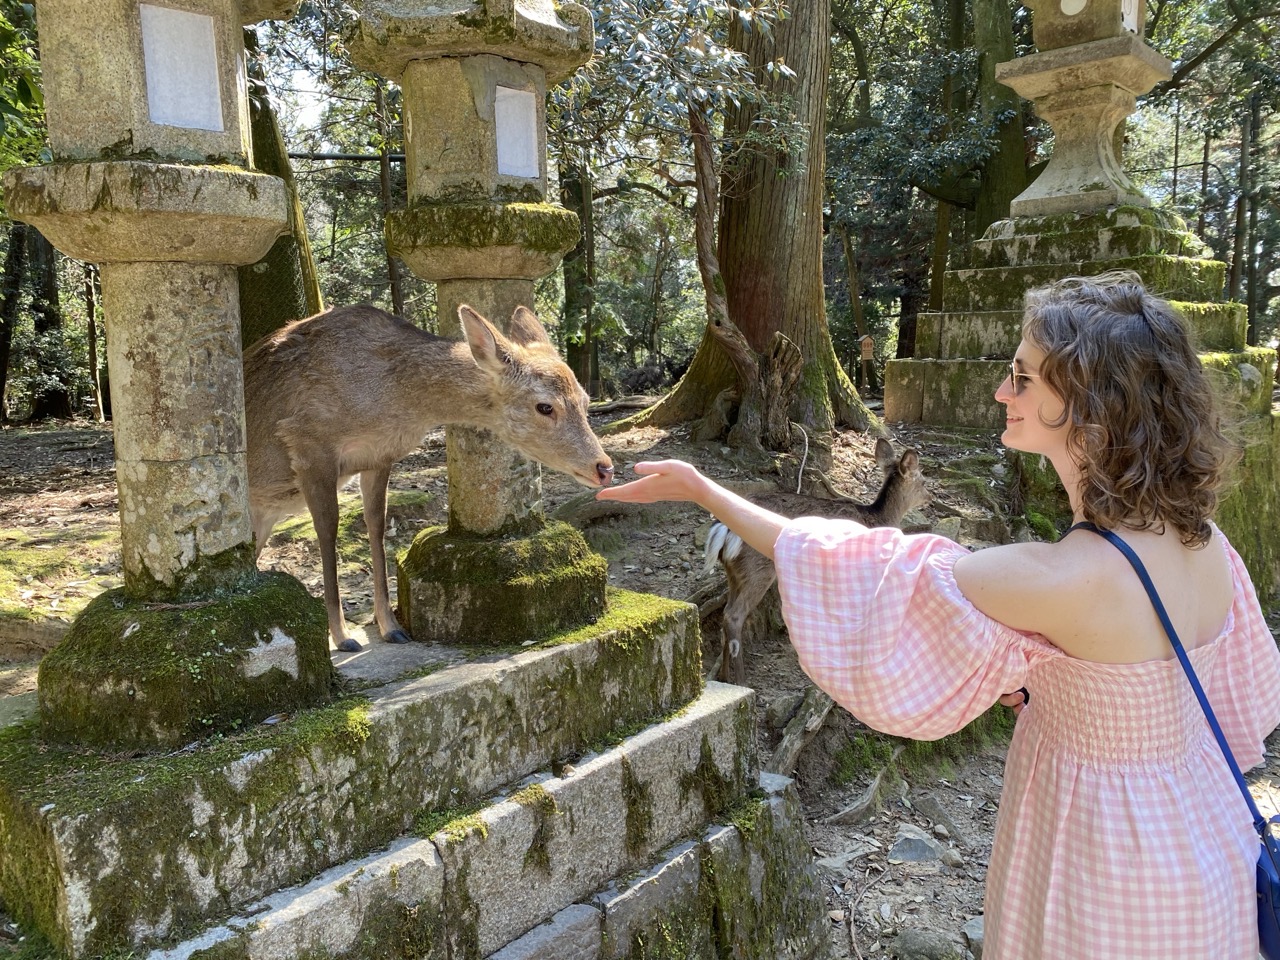 Lucy feeding a friendly deer